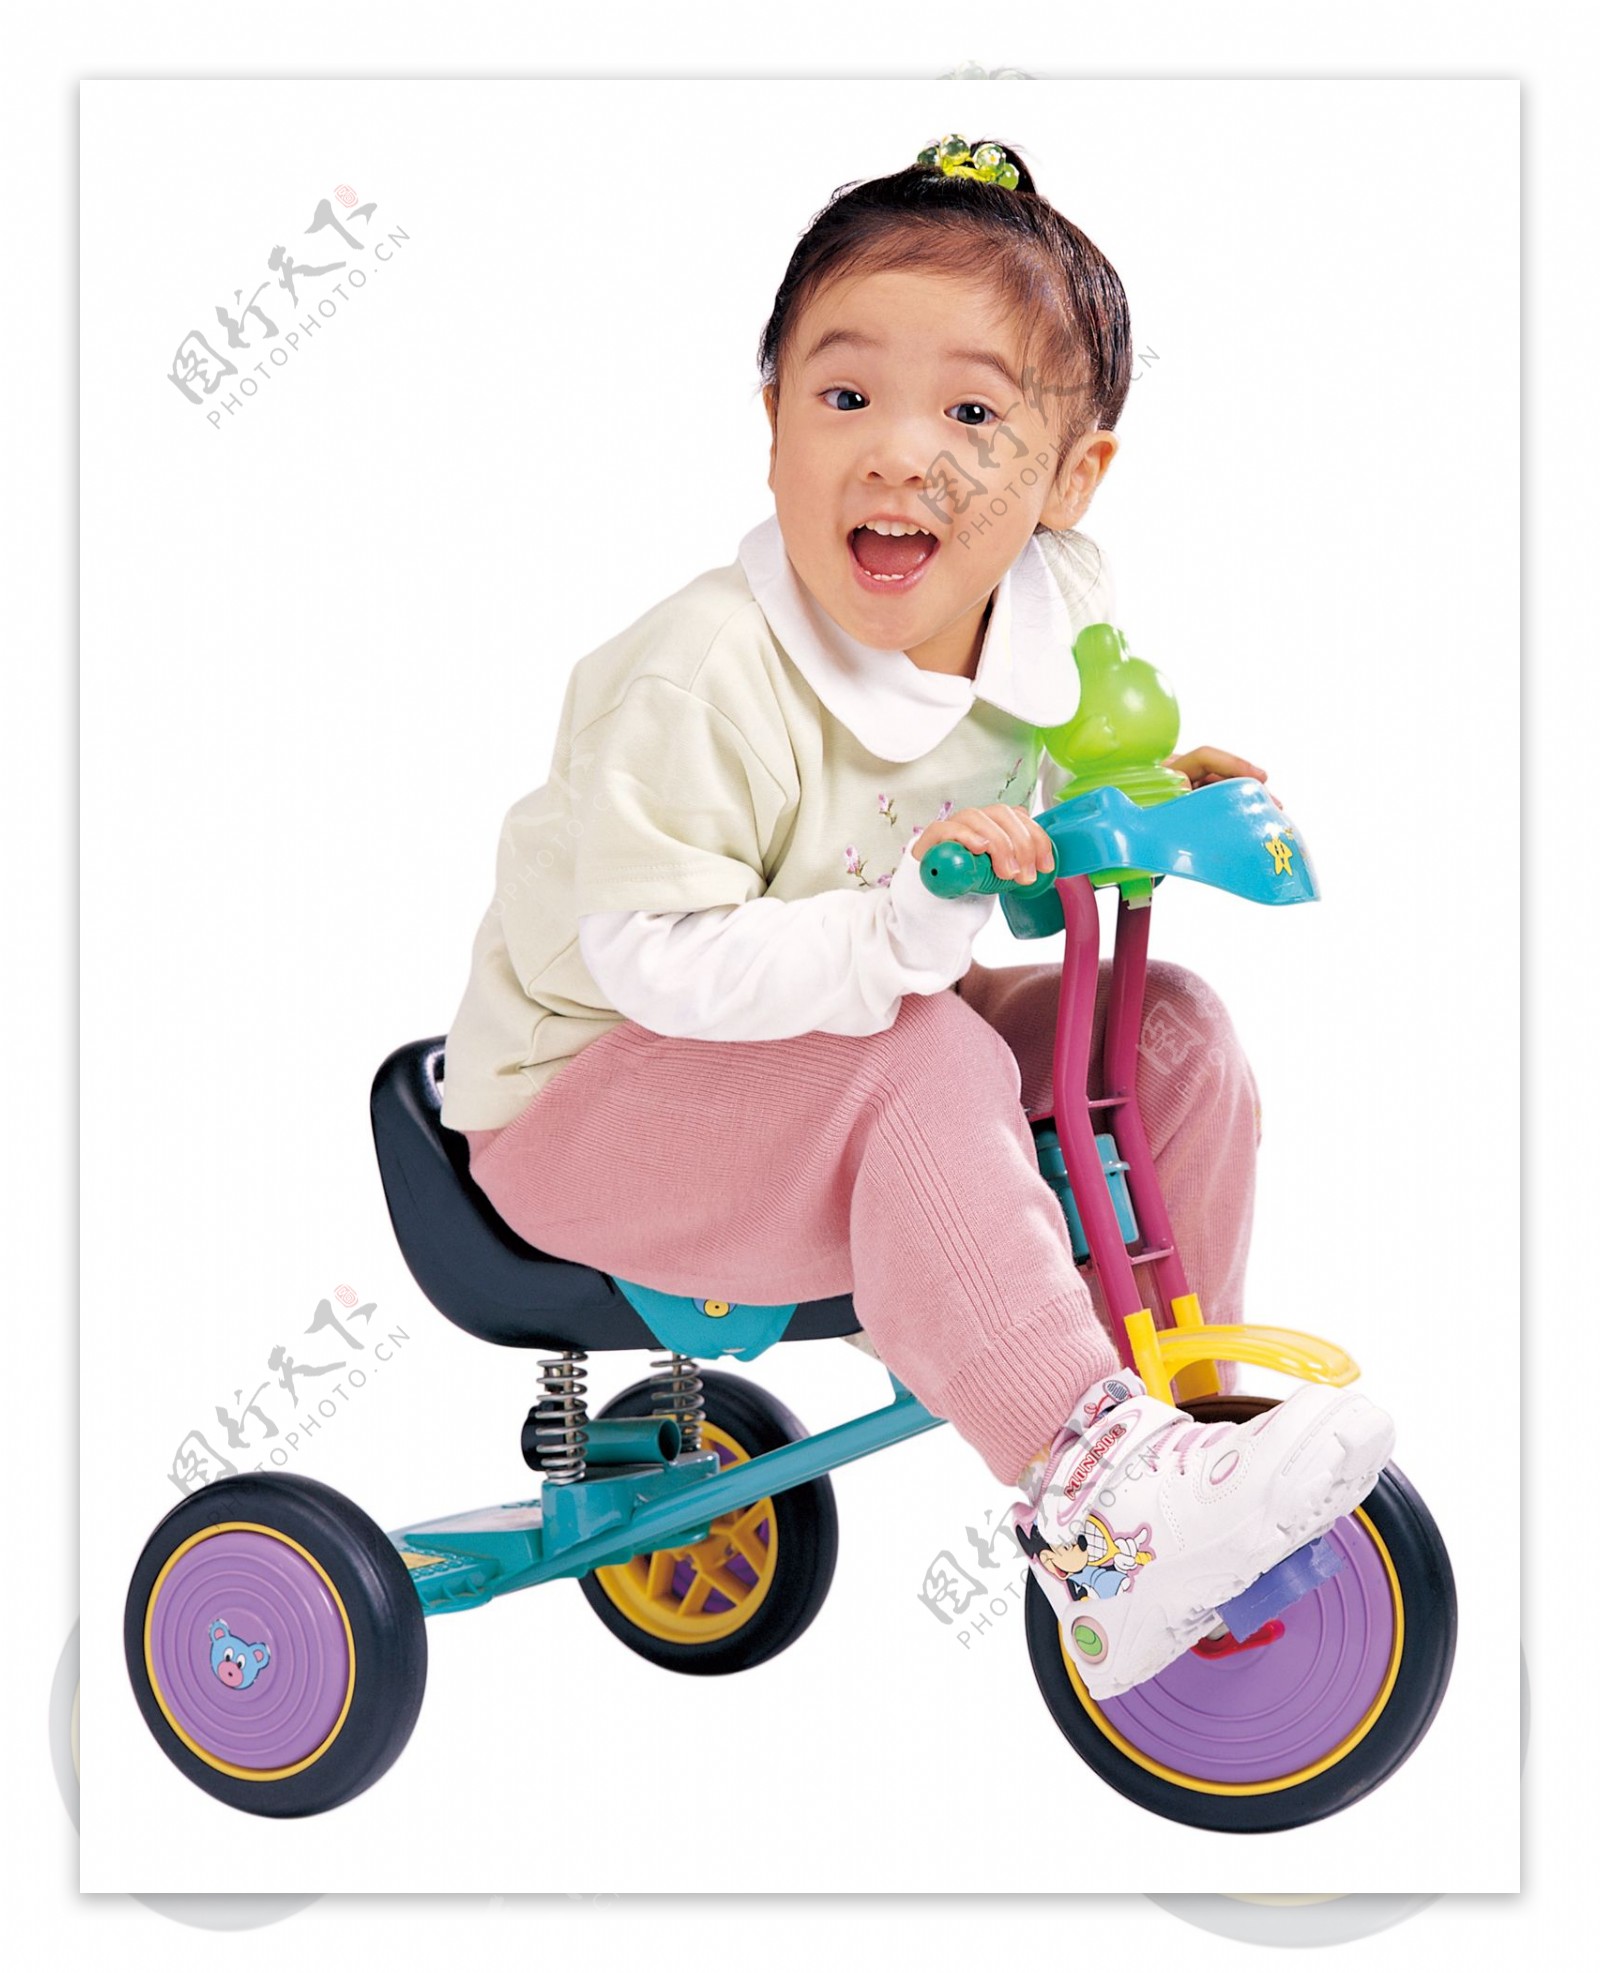 小女孩微笑骑童车图片